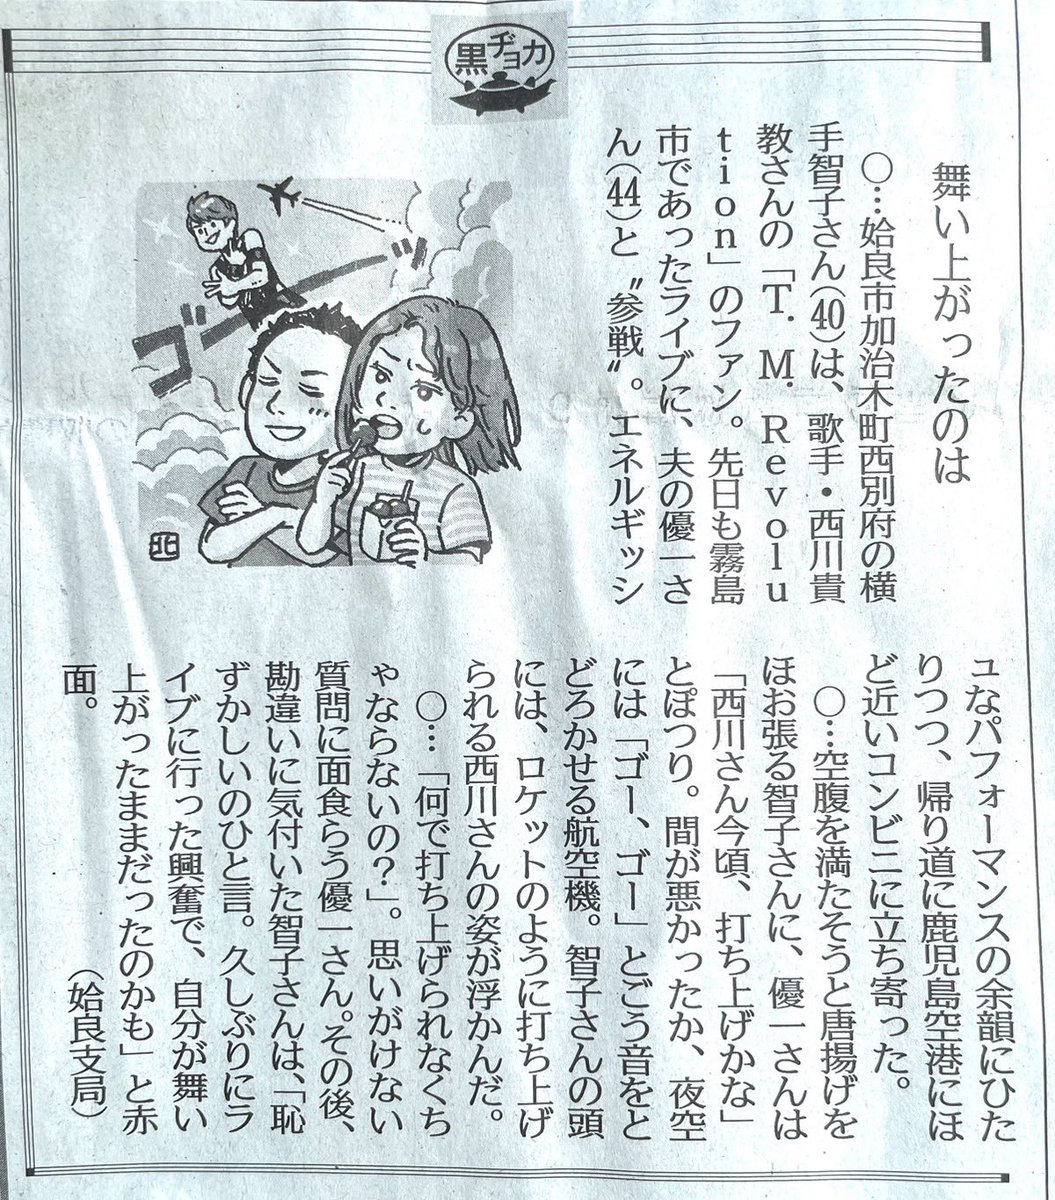 九州の知人から「地元の新聞にこんな記事が」と送られてきました(笑)やっぱ種子島が近いから？挿絵もいい味出してます！